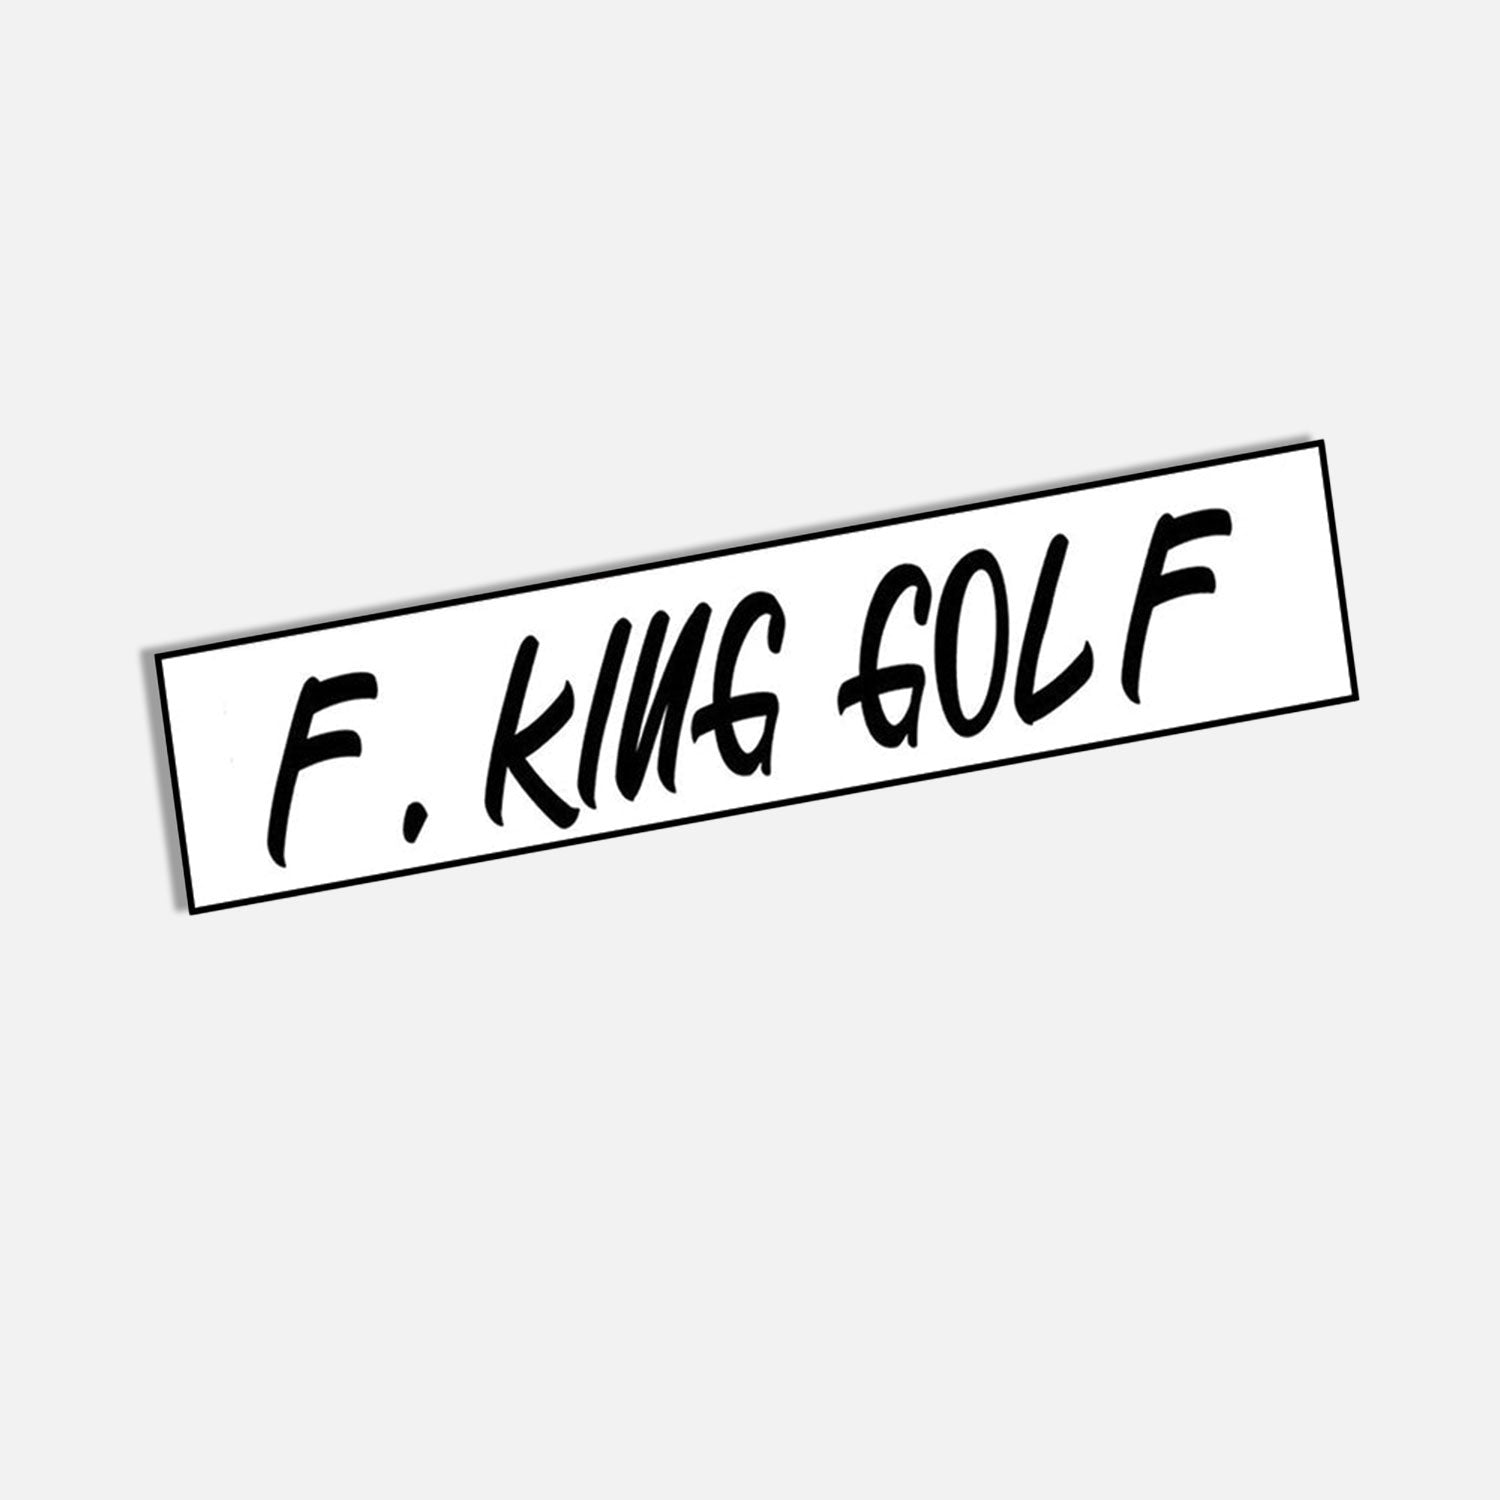 F. King Golf Sticker